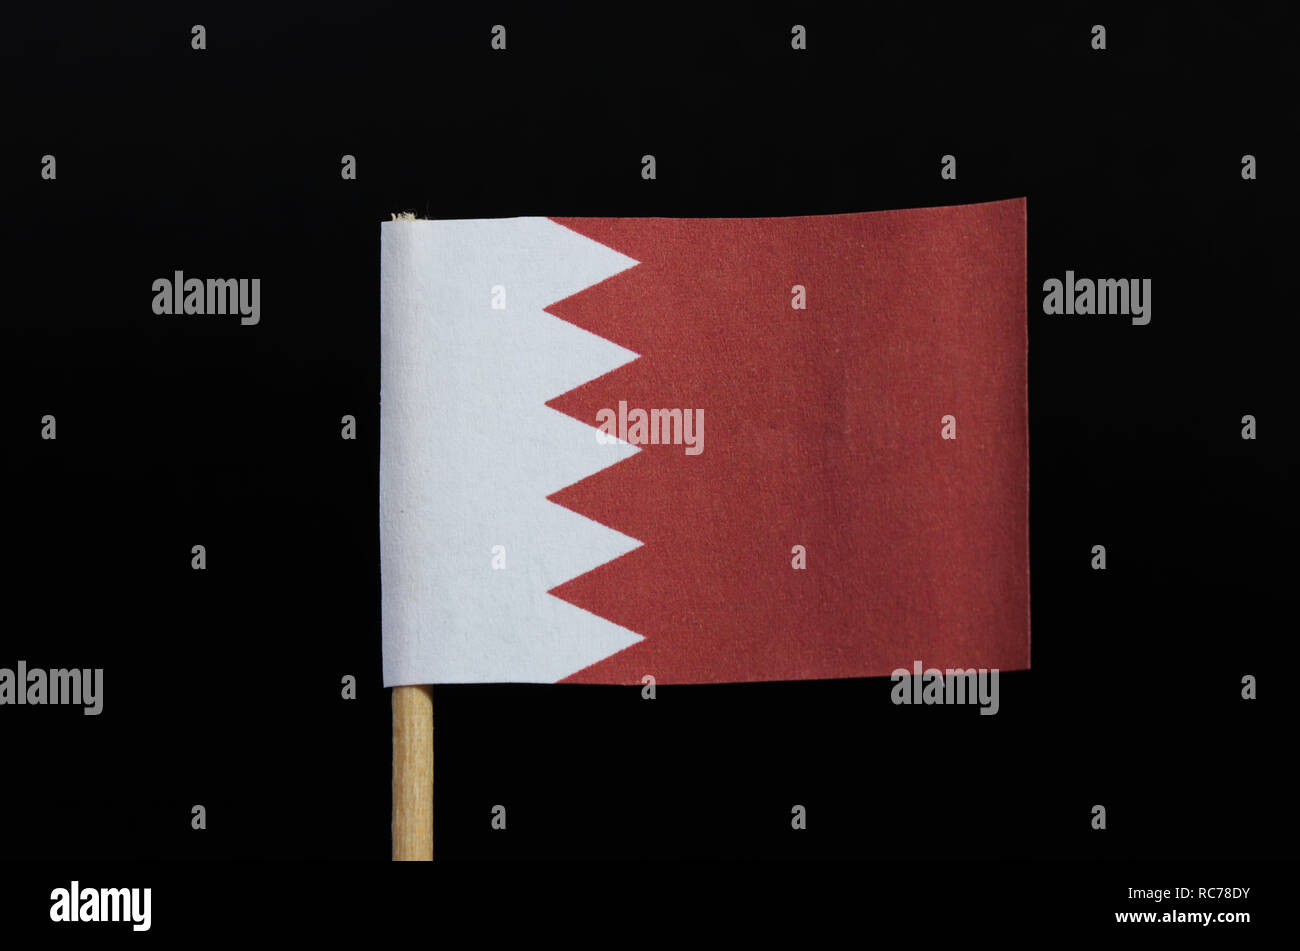 Eine nationale Flagge von Bahrain auf Zahnstocher auf schwarzem Hintergrund. Ein weißes Feld auf der Hoist Seite aus einer größeren roten Feld getrennt, indem fünf whit Stockfoto